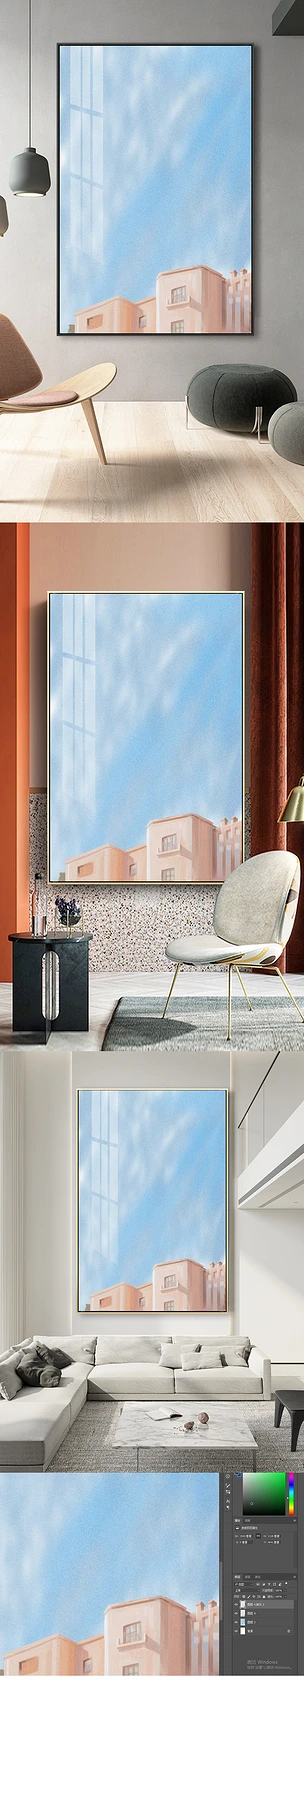 简约现代空间客厅原创北欧风格粉色房子装饰画